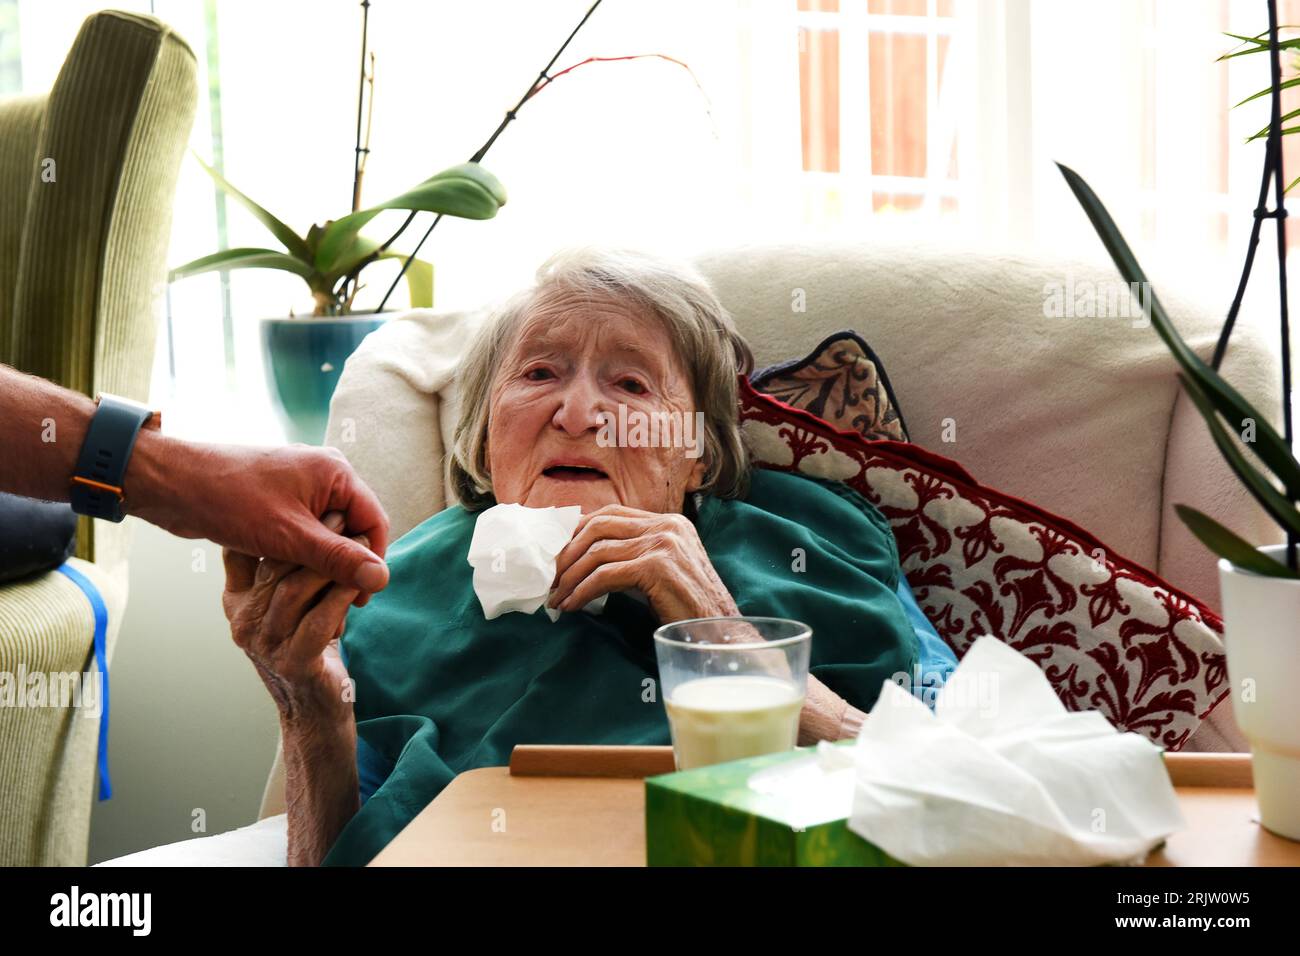 Ältere Dame im Alter von 103 Jahren Gefühl, ein Verwandter Hand in Care Home Großbritannien hundertjährigen 100 Jahre alt Stockfoto